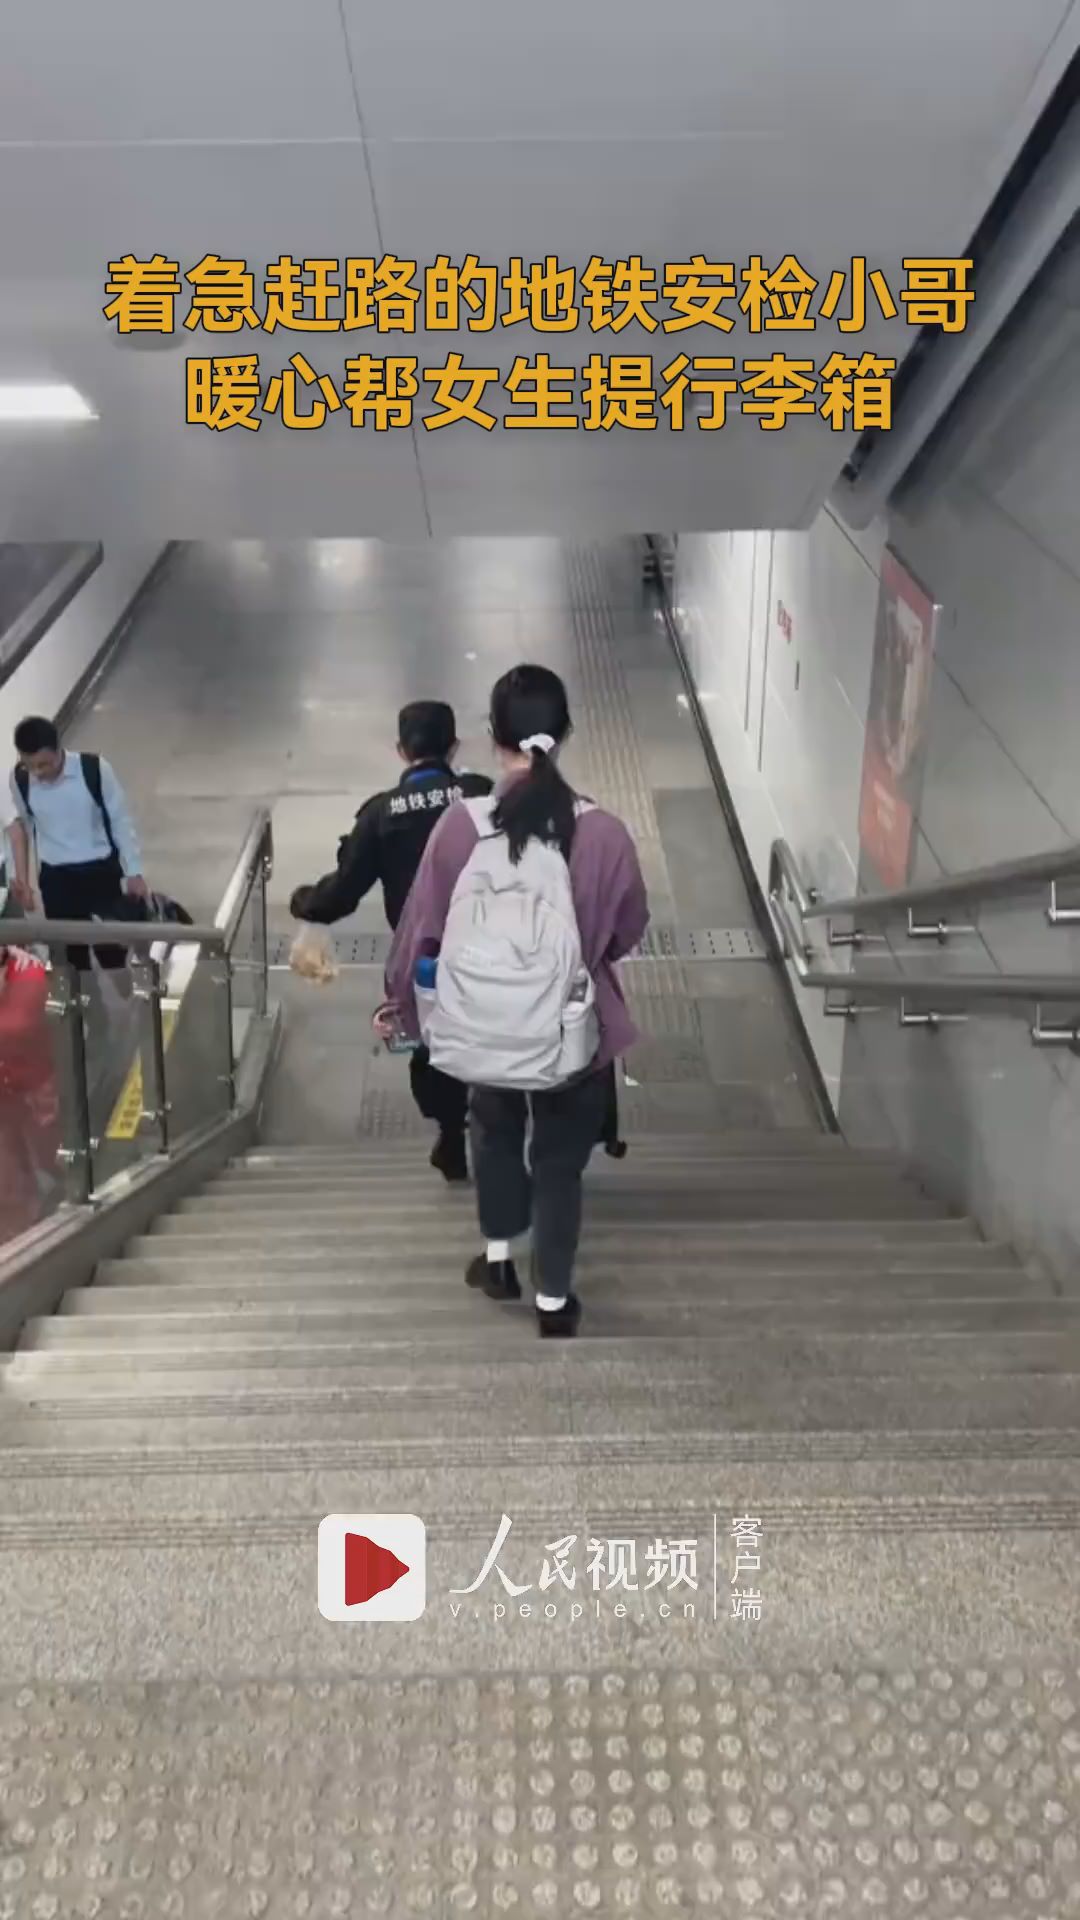 地铁安检小哥一言不发帮女生提行李箱